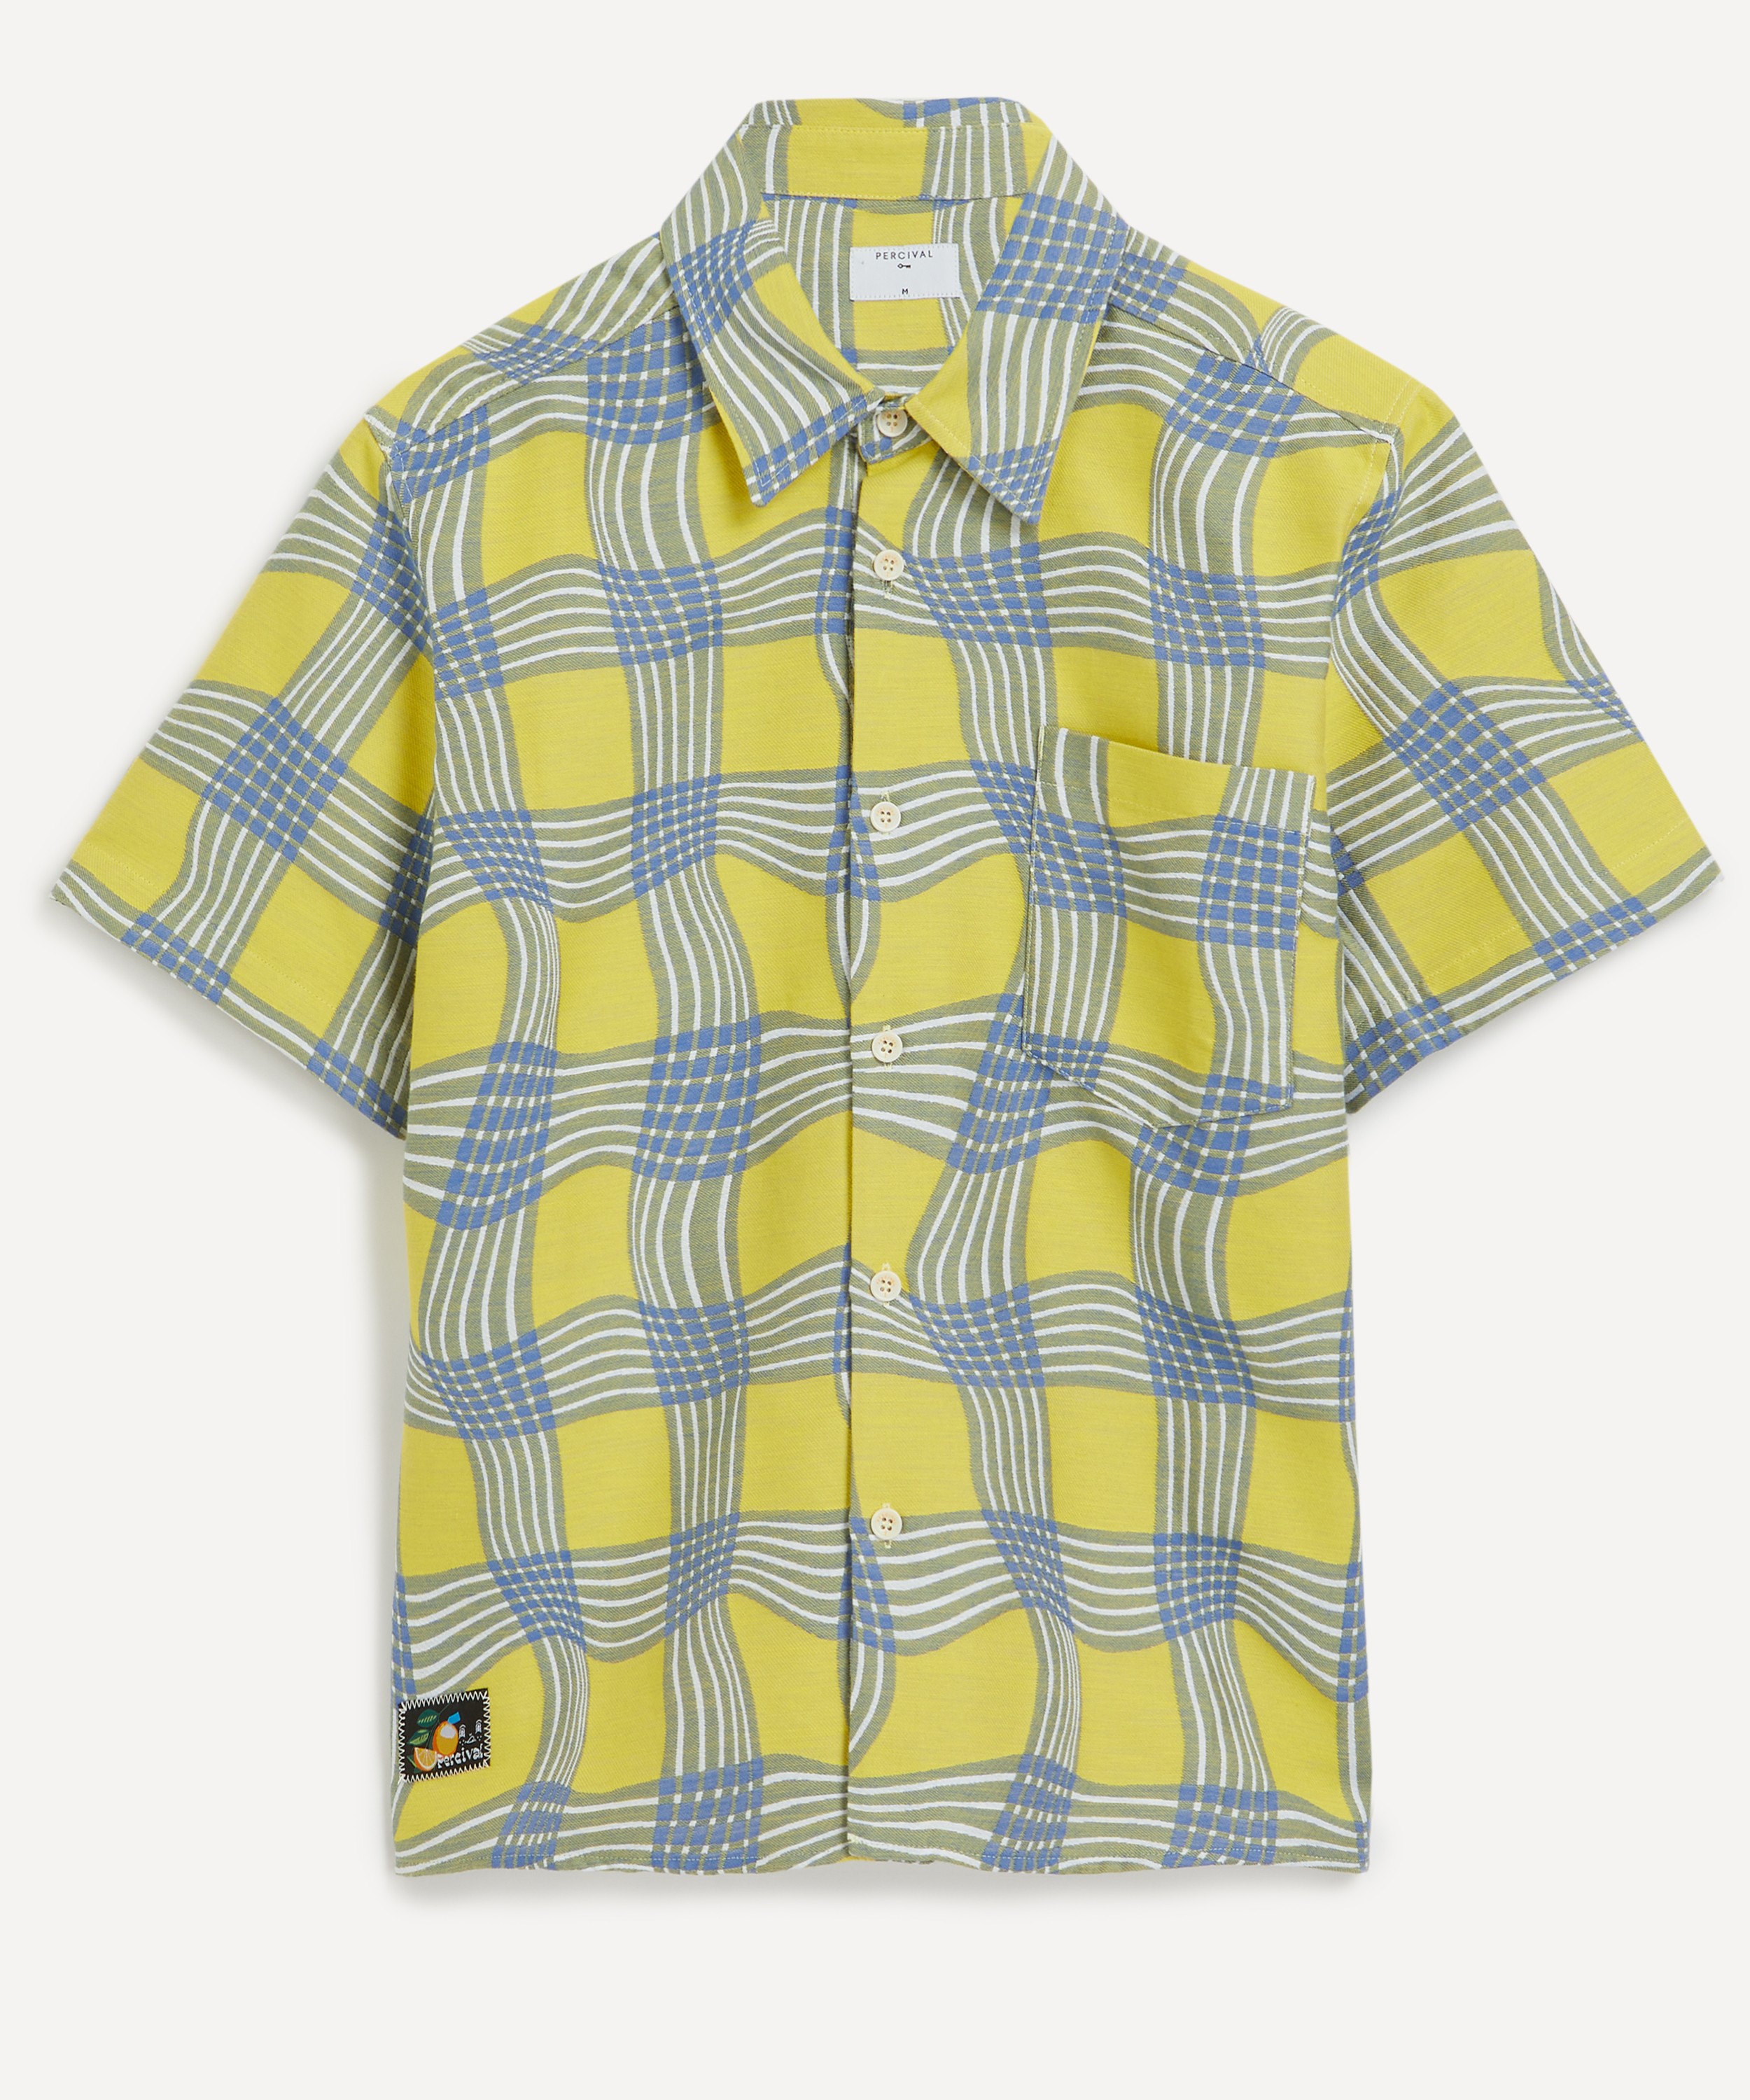 Percival - Sunshine Twister Clerk Shirt